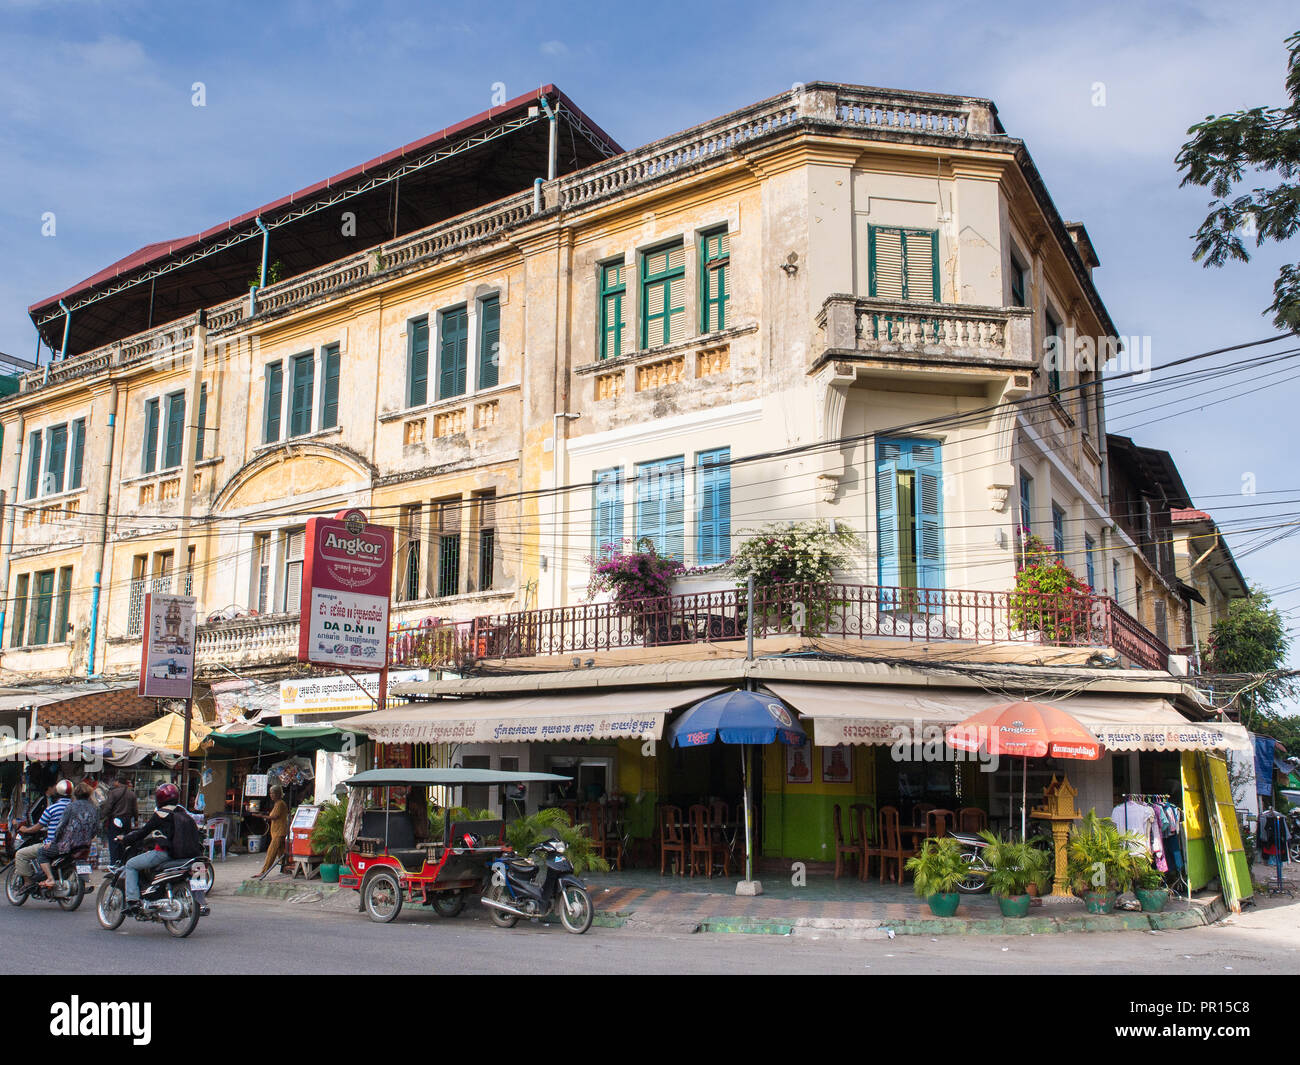 Un immeuble dans le vieux quartier français par le bureau de poste, Phnom Penh, Cambodge, Indochine, Asie du Sud, Asie Banque D'Images